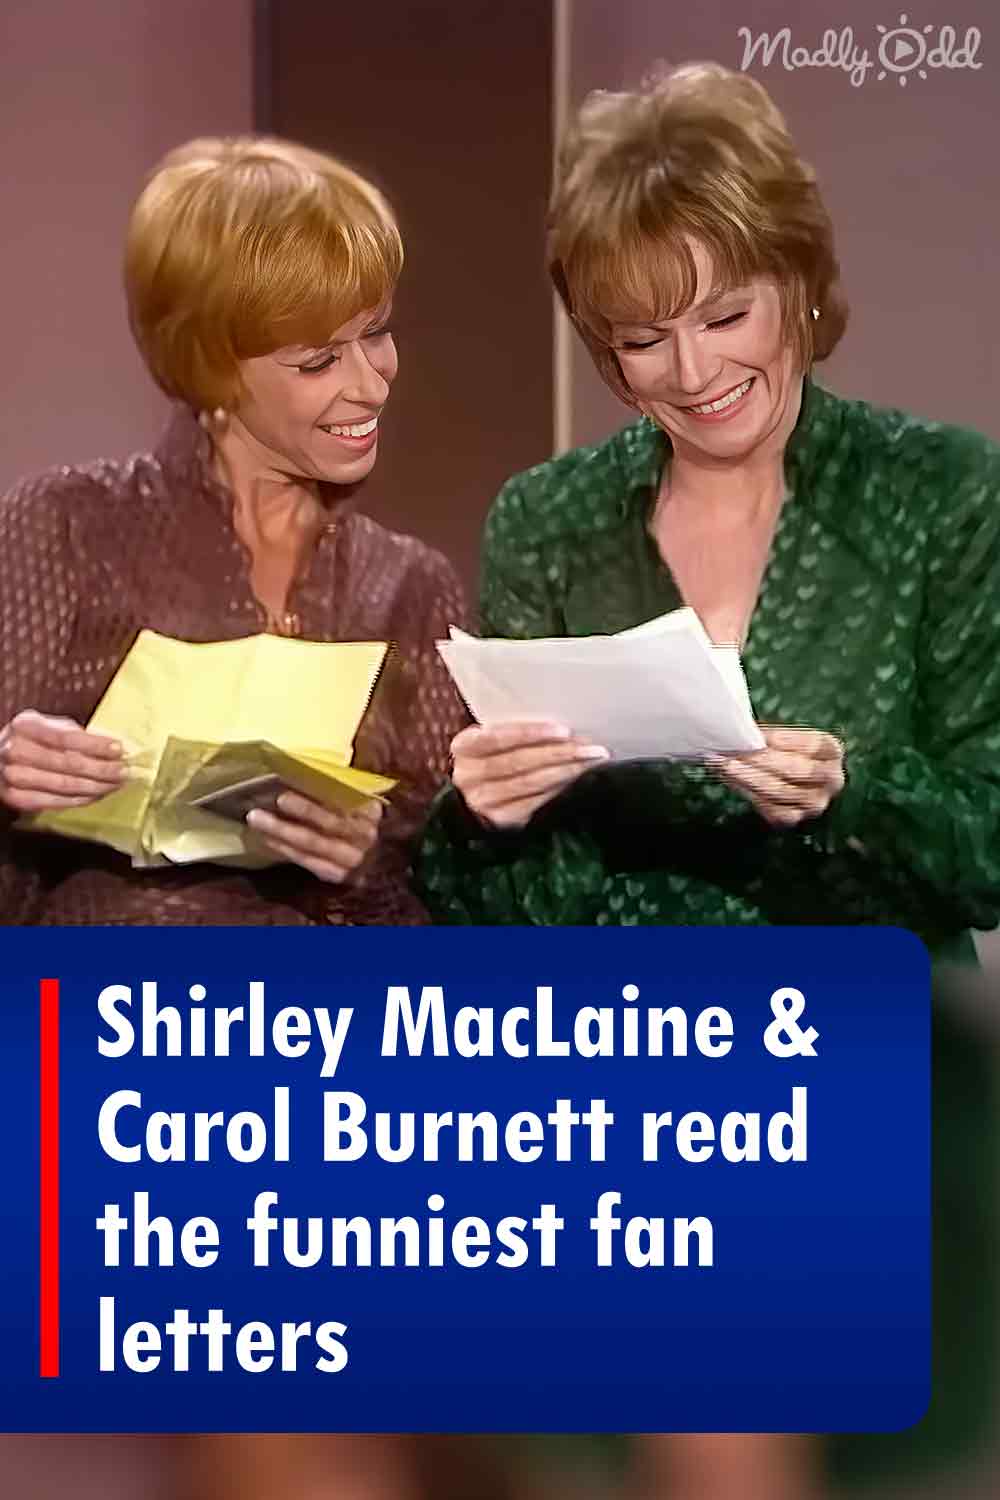 Shirley MacLaine & Carol Burnett read the funniest fan letters